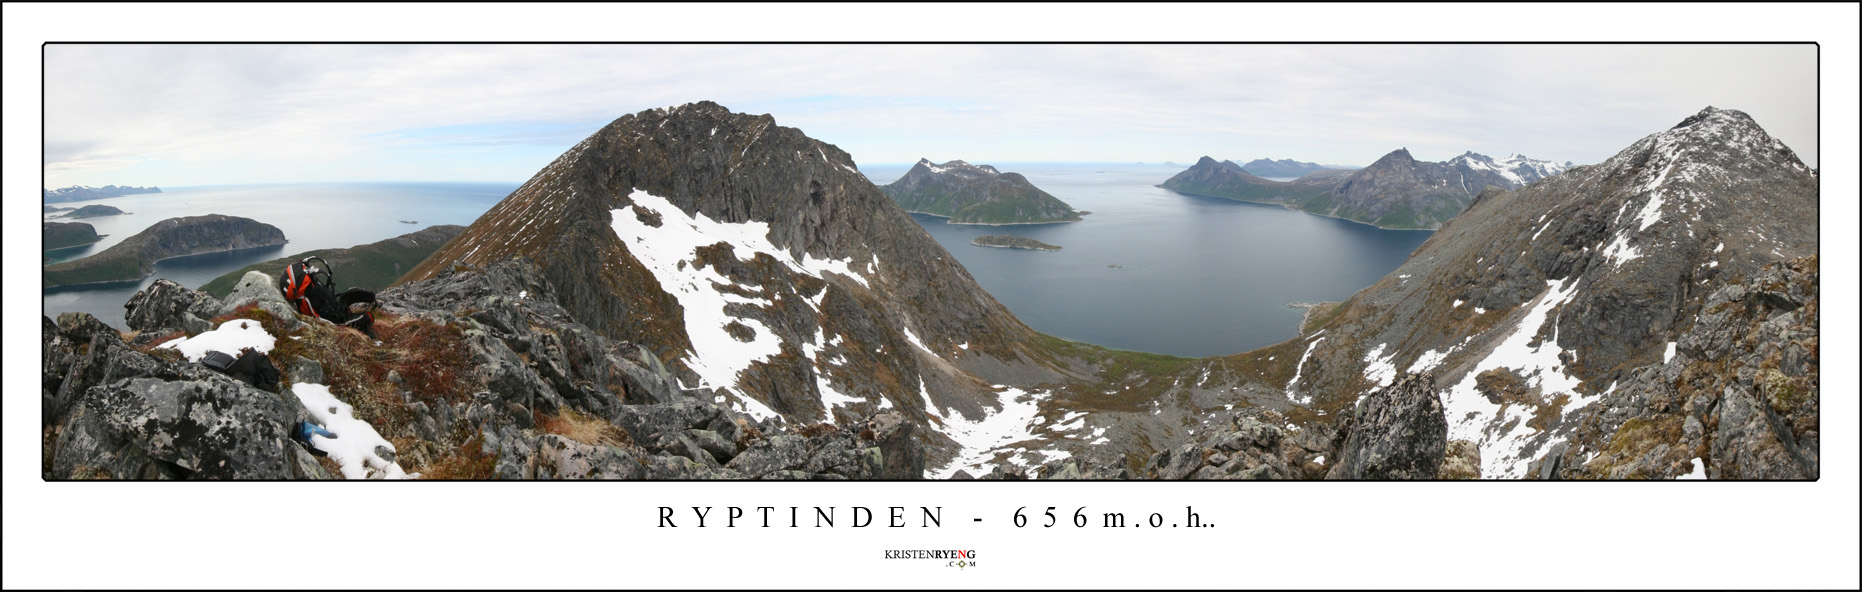 PanoramaRyptinden.jpg - Utsikt fra Ryptinden. Breitinden ses helt til høyre i bildet med Rekvik i bakkant. I midten ligger Sessøy og litt til venstre for midten ses Bremnestinden.